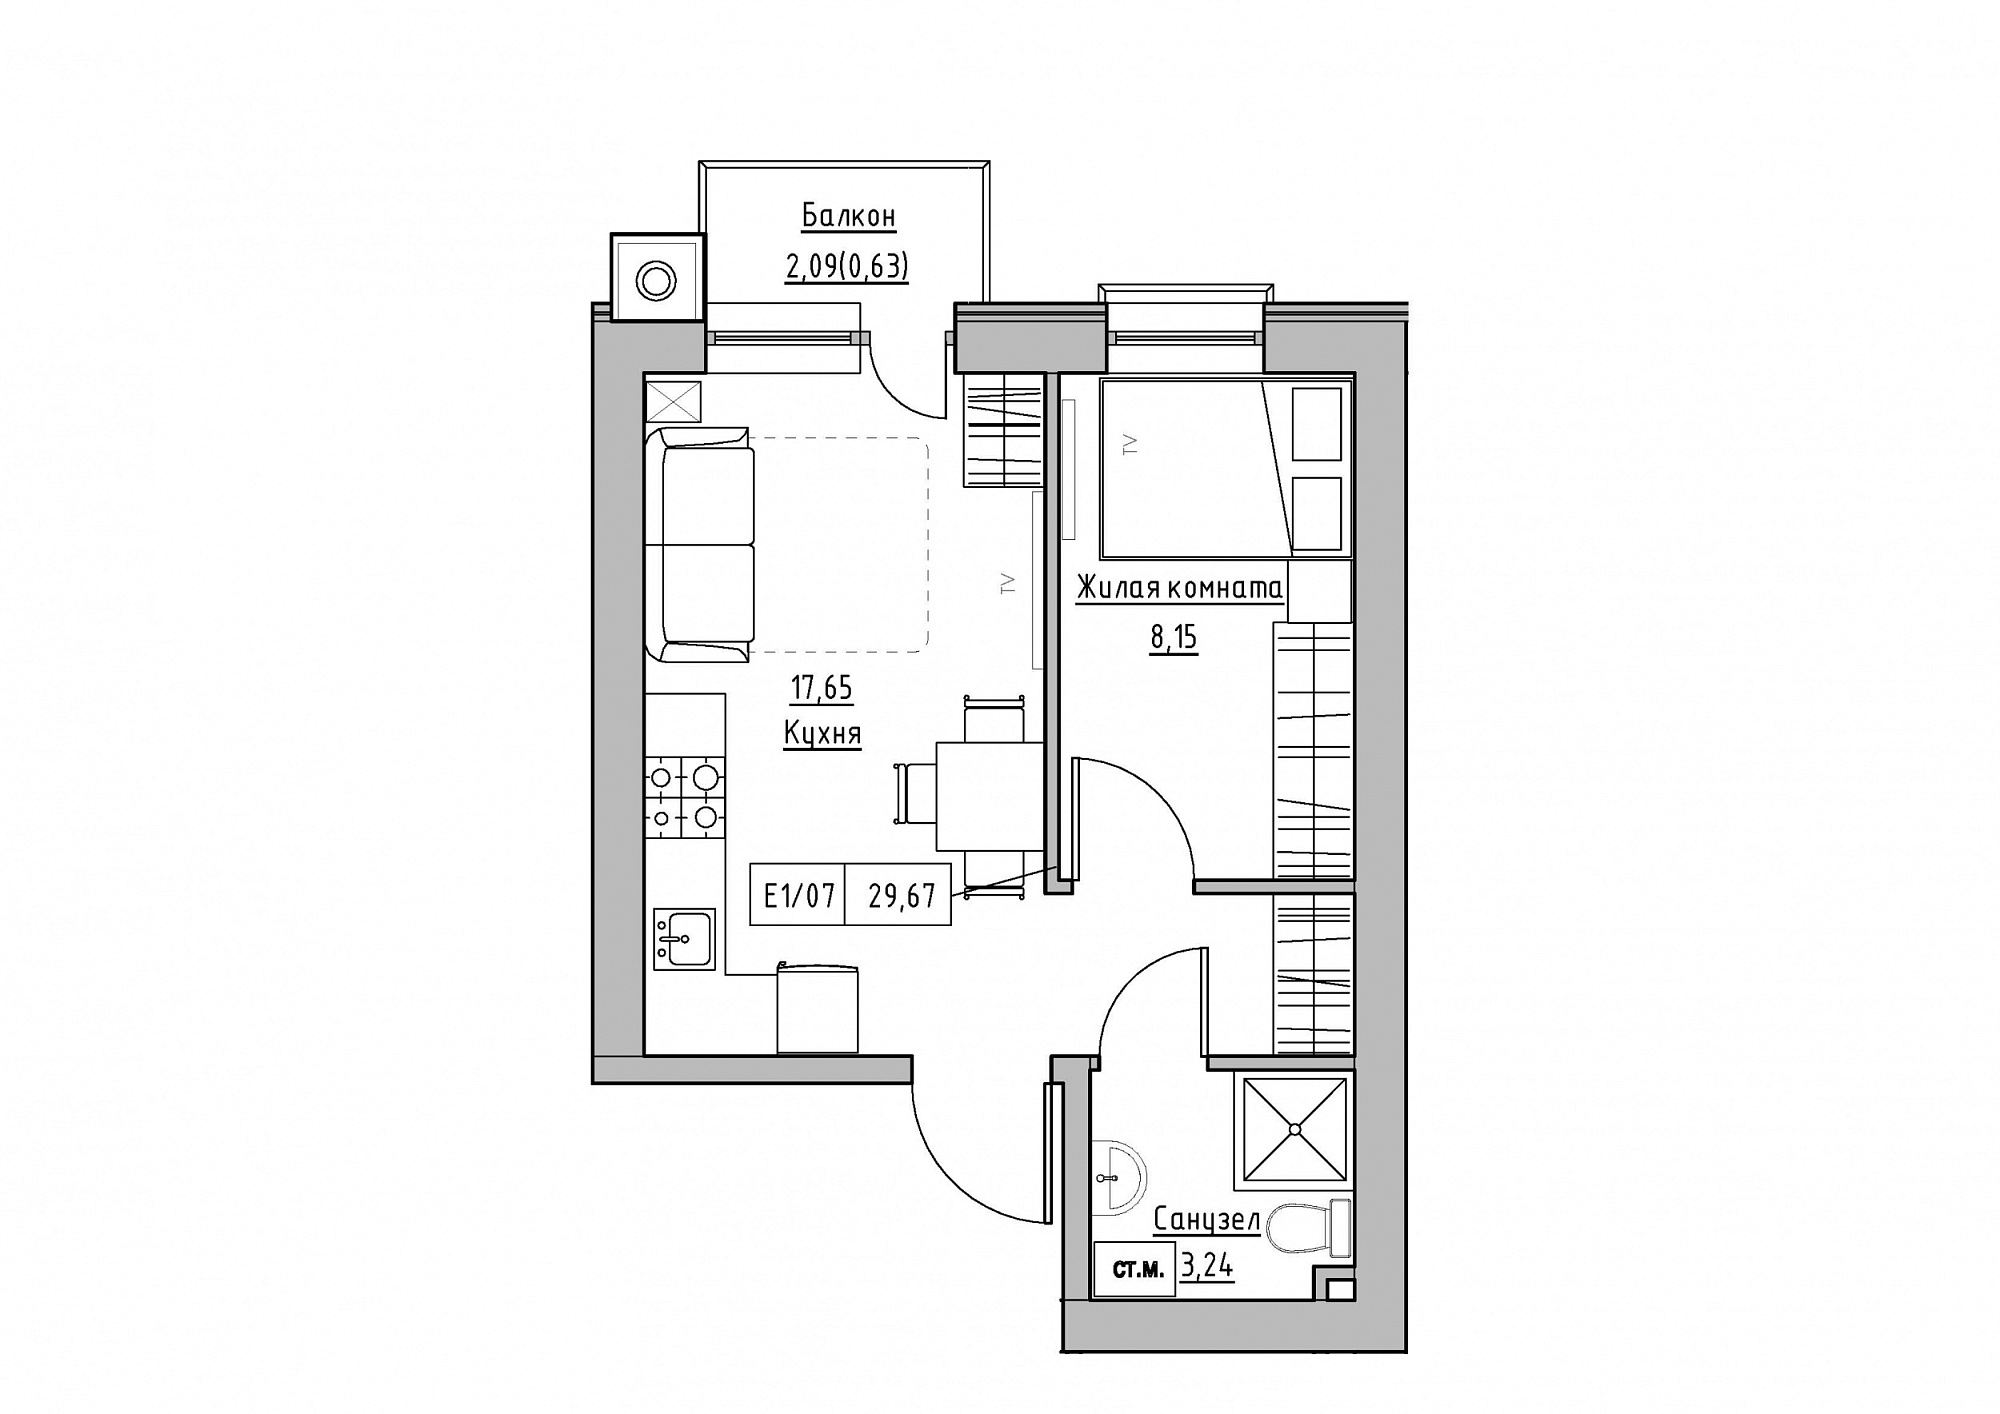 Планировка 1-к квартира площей 29.67м2, KS-012-05/0003.